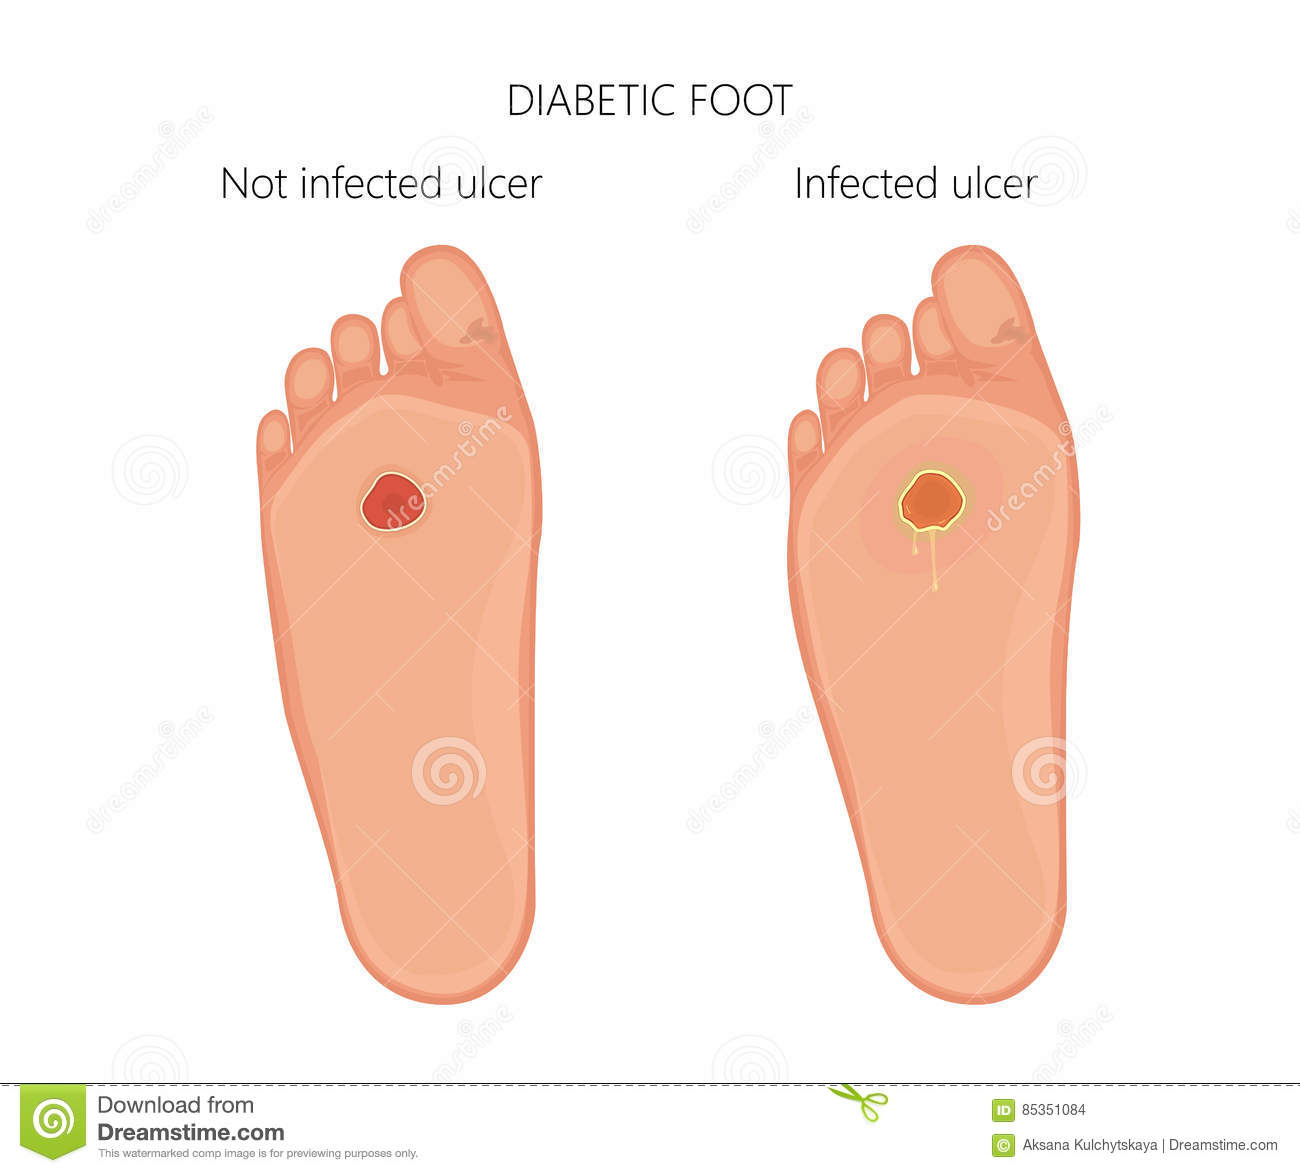 piede diabetico con l ulcera infettata